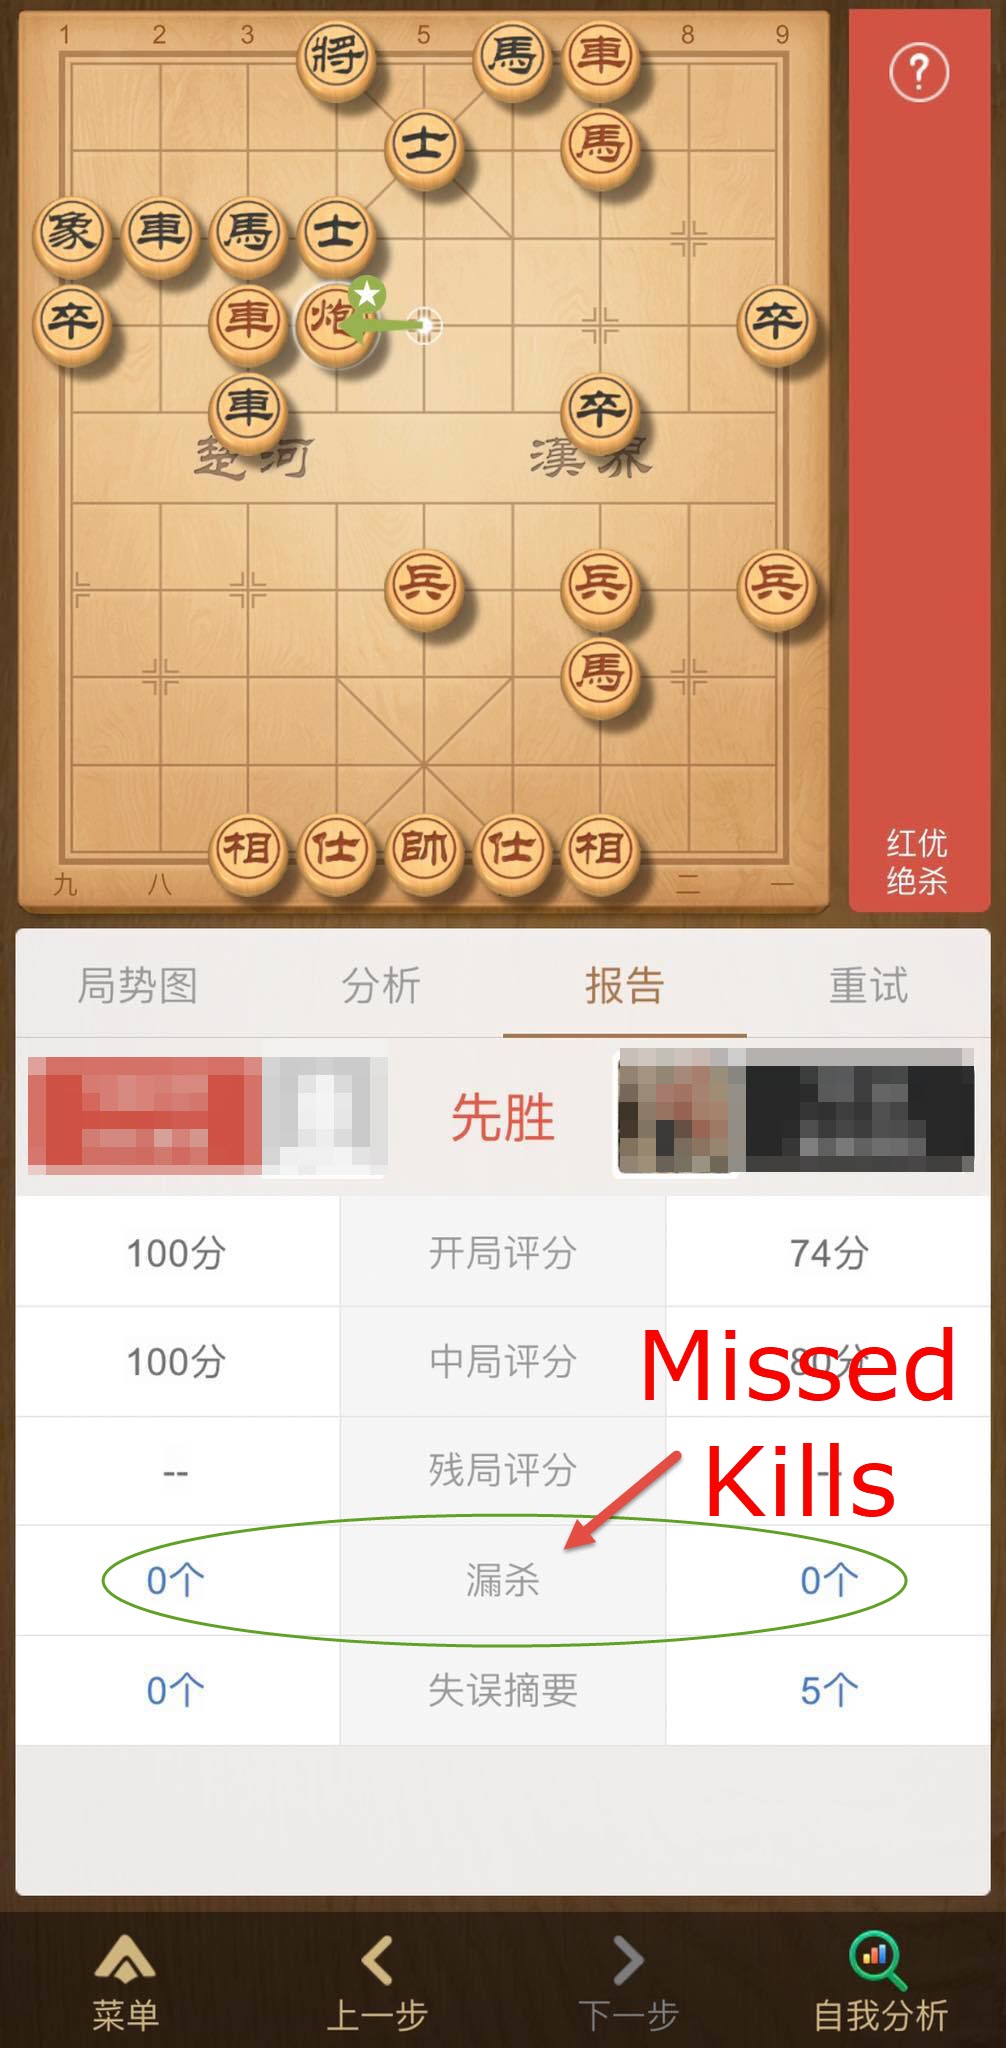 Tiantian analysis of game